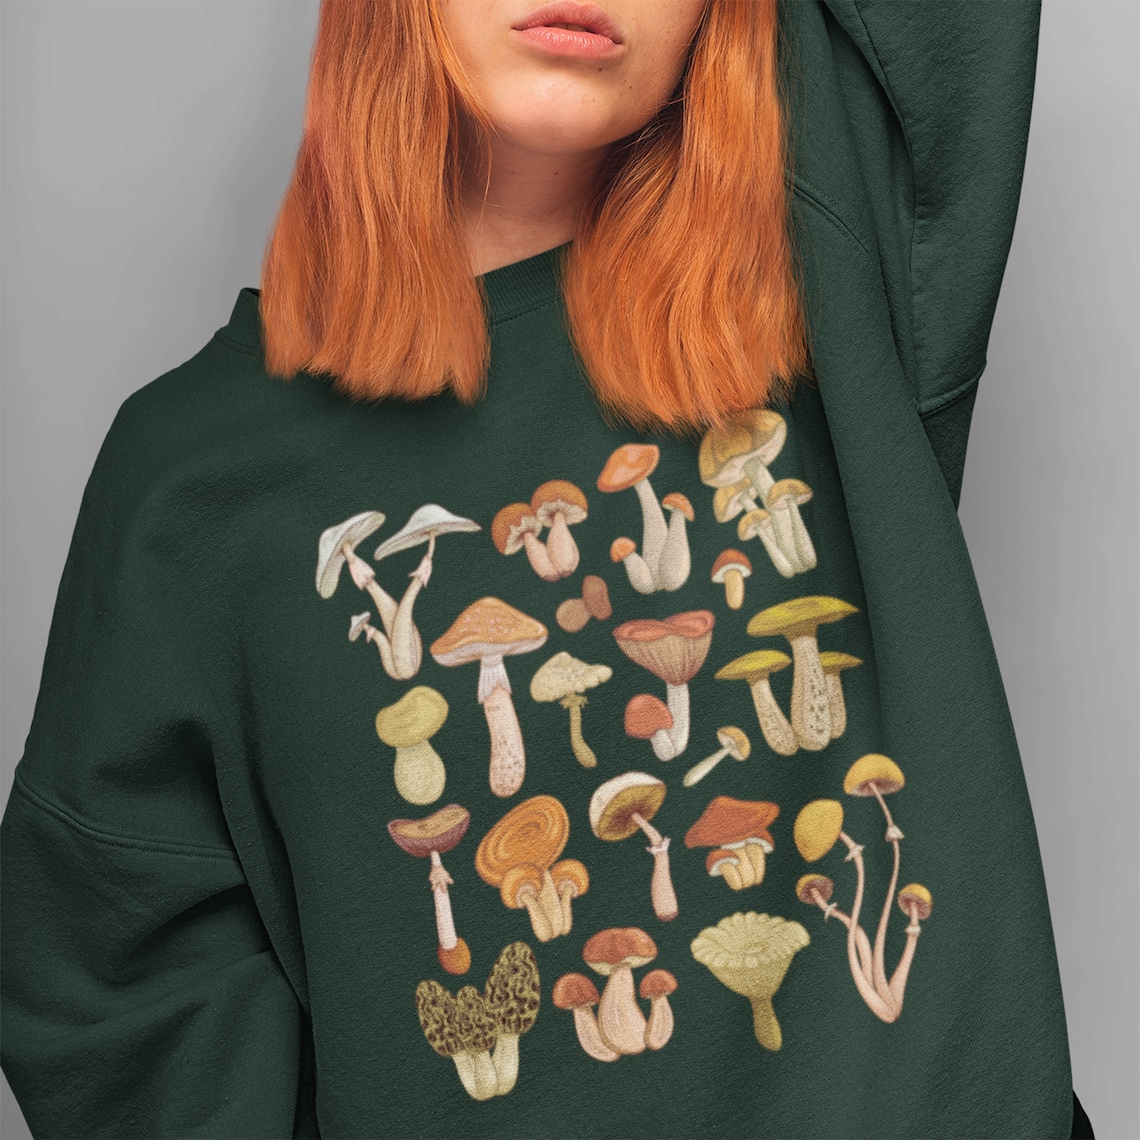 Mushroom Sweatshirt Mushroom Sweater Mushroom Apparel | Etsy